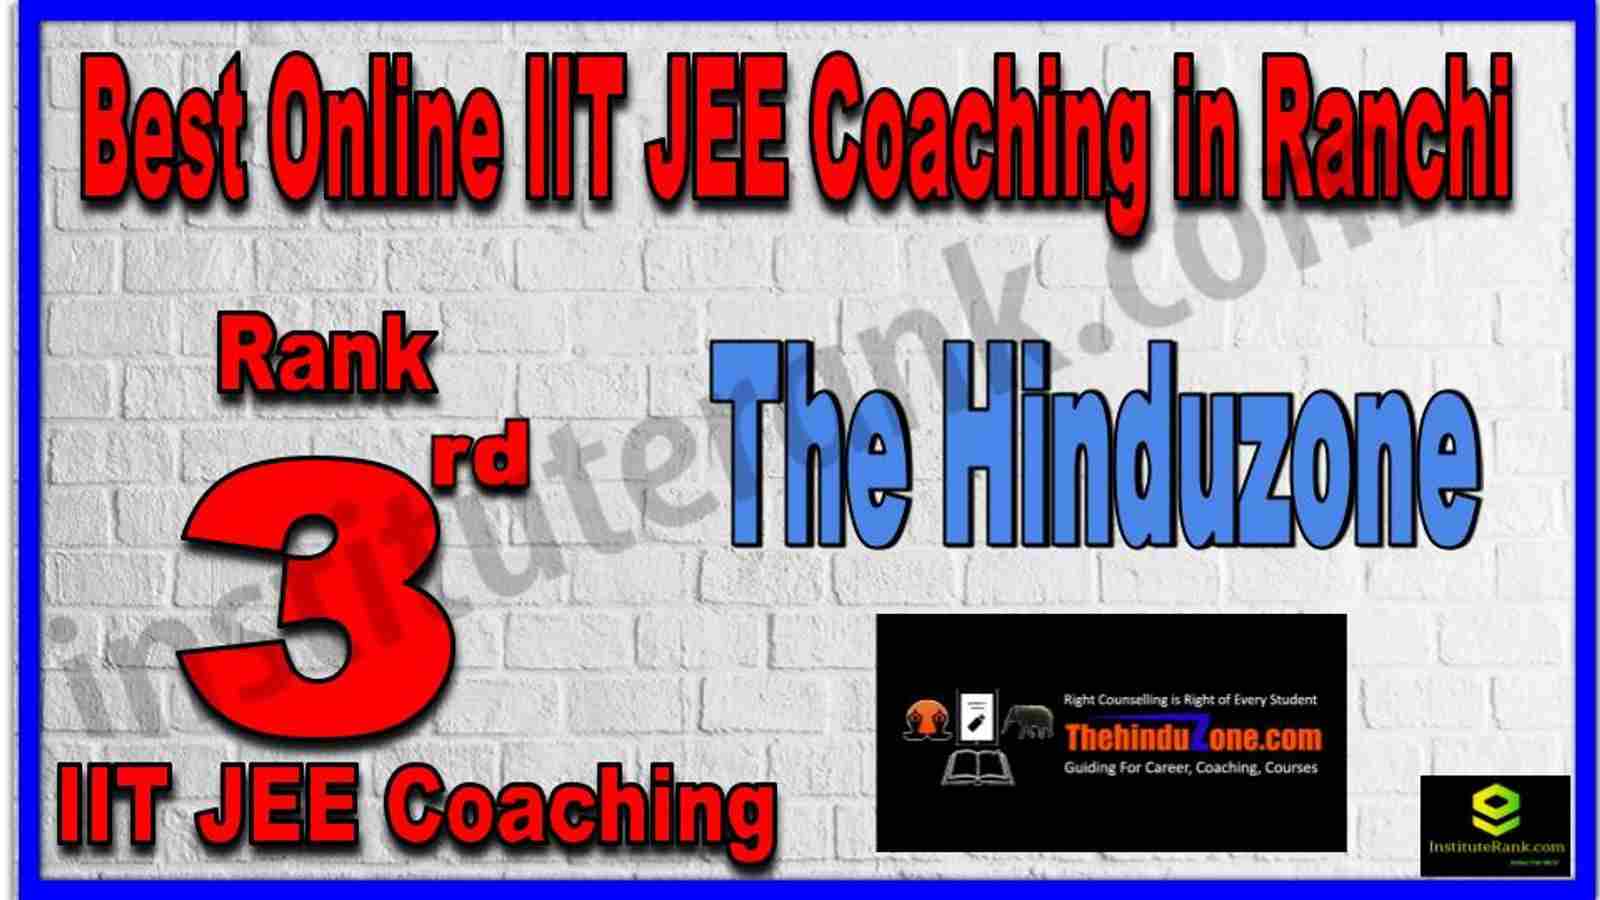 Rank 3rd Best Online IIT JEE Coaching in Ranchi